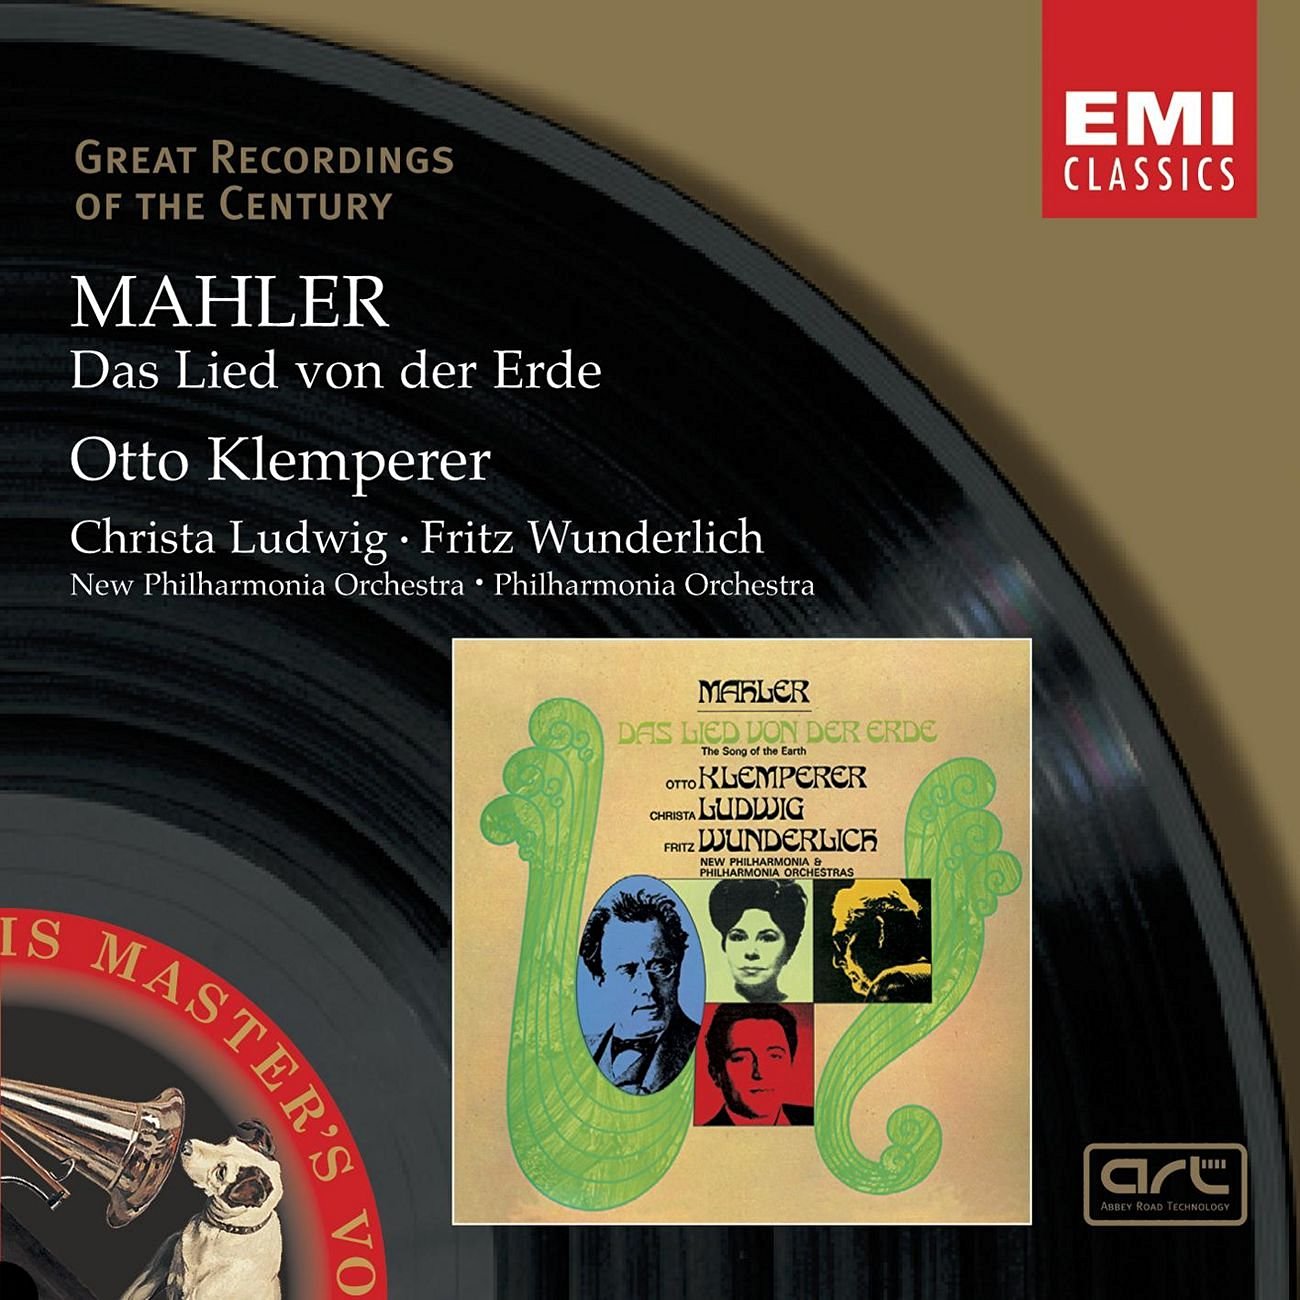 Gustav Mahler Das Lied von der Erde